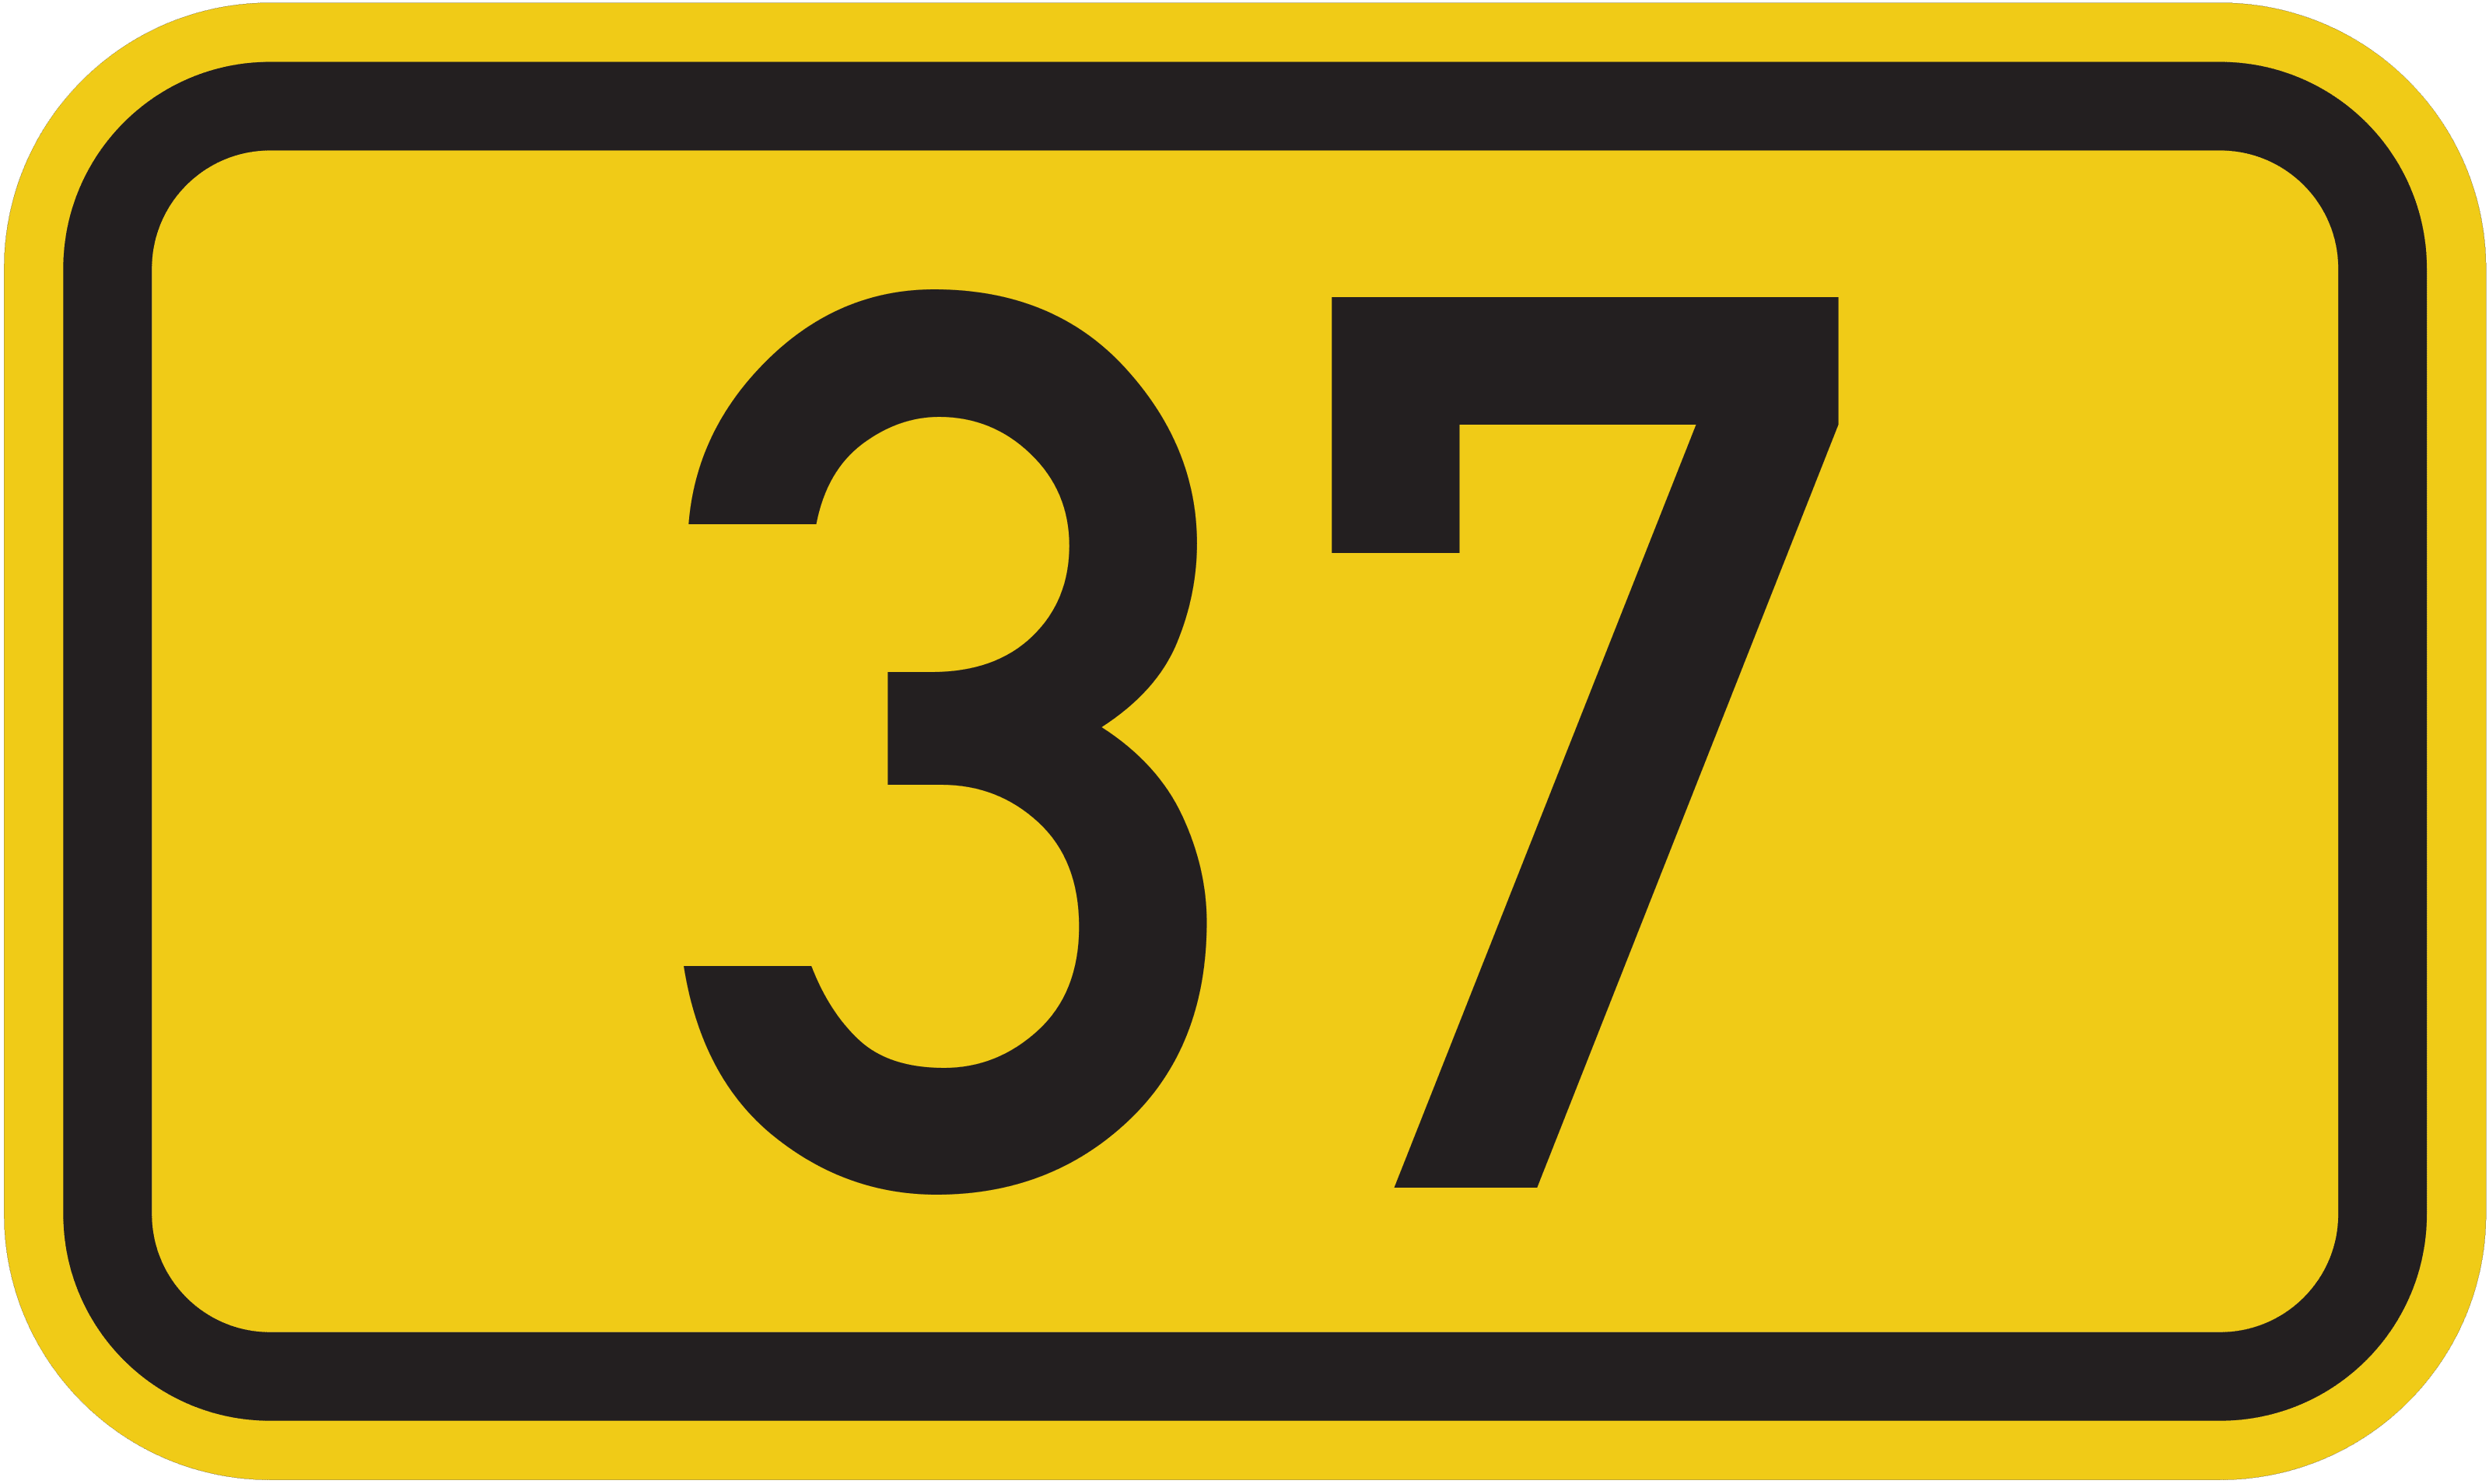 Bundesstraße B 37